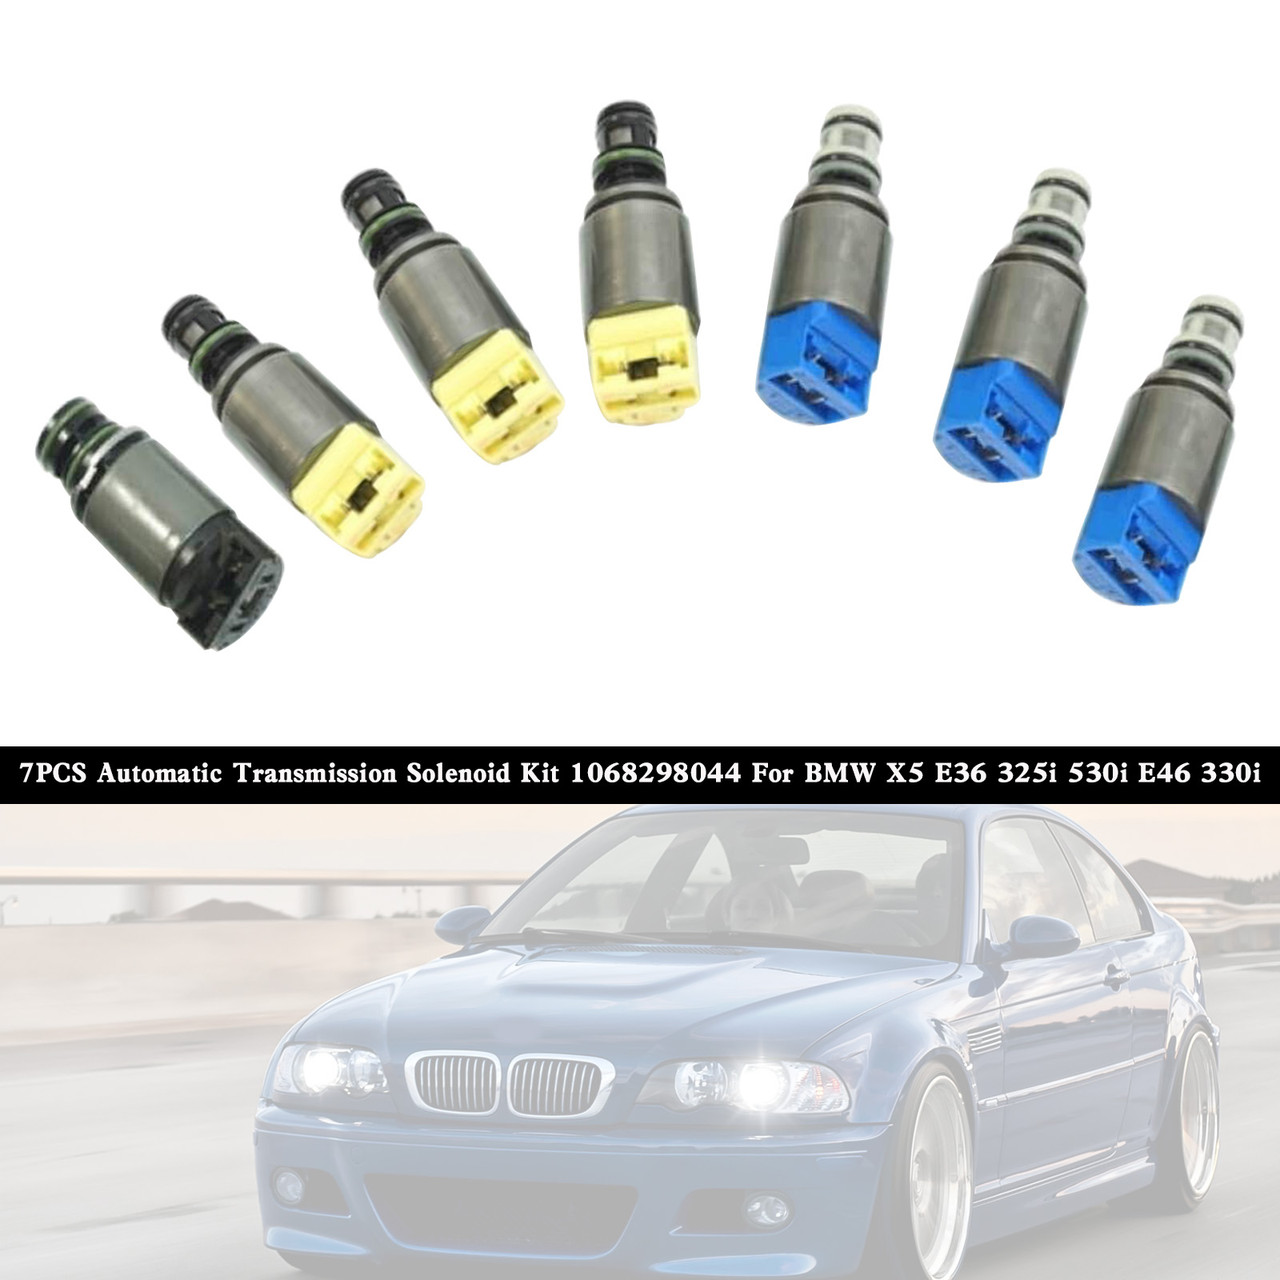 7PCS Automatic Transmission Solenoid Kit 1068298044 For BMW X5 E36 325i 530i E46 330i